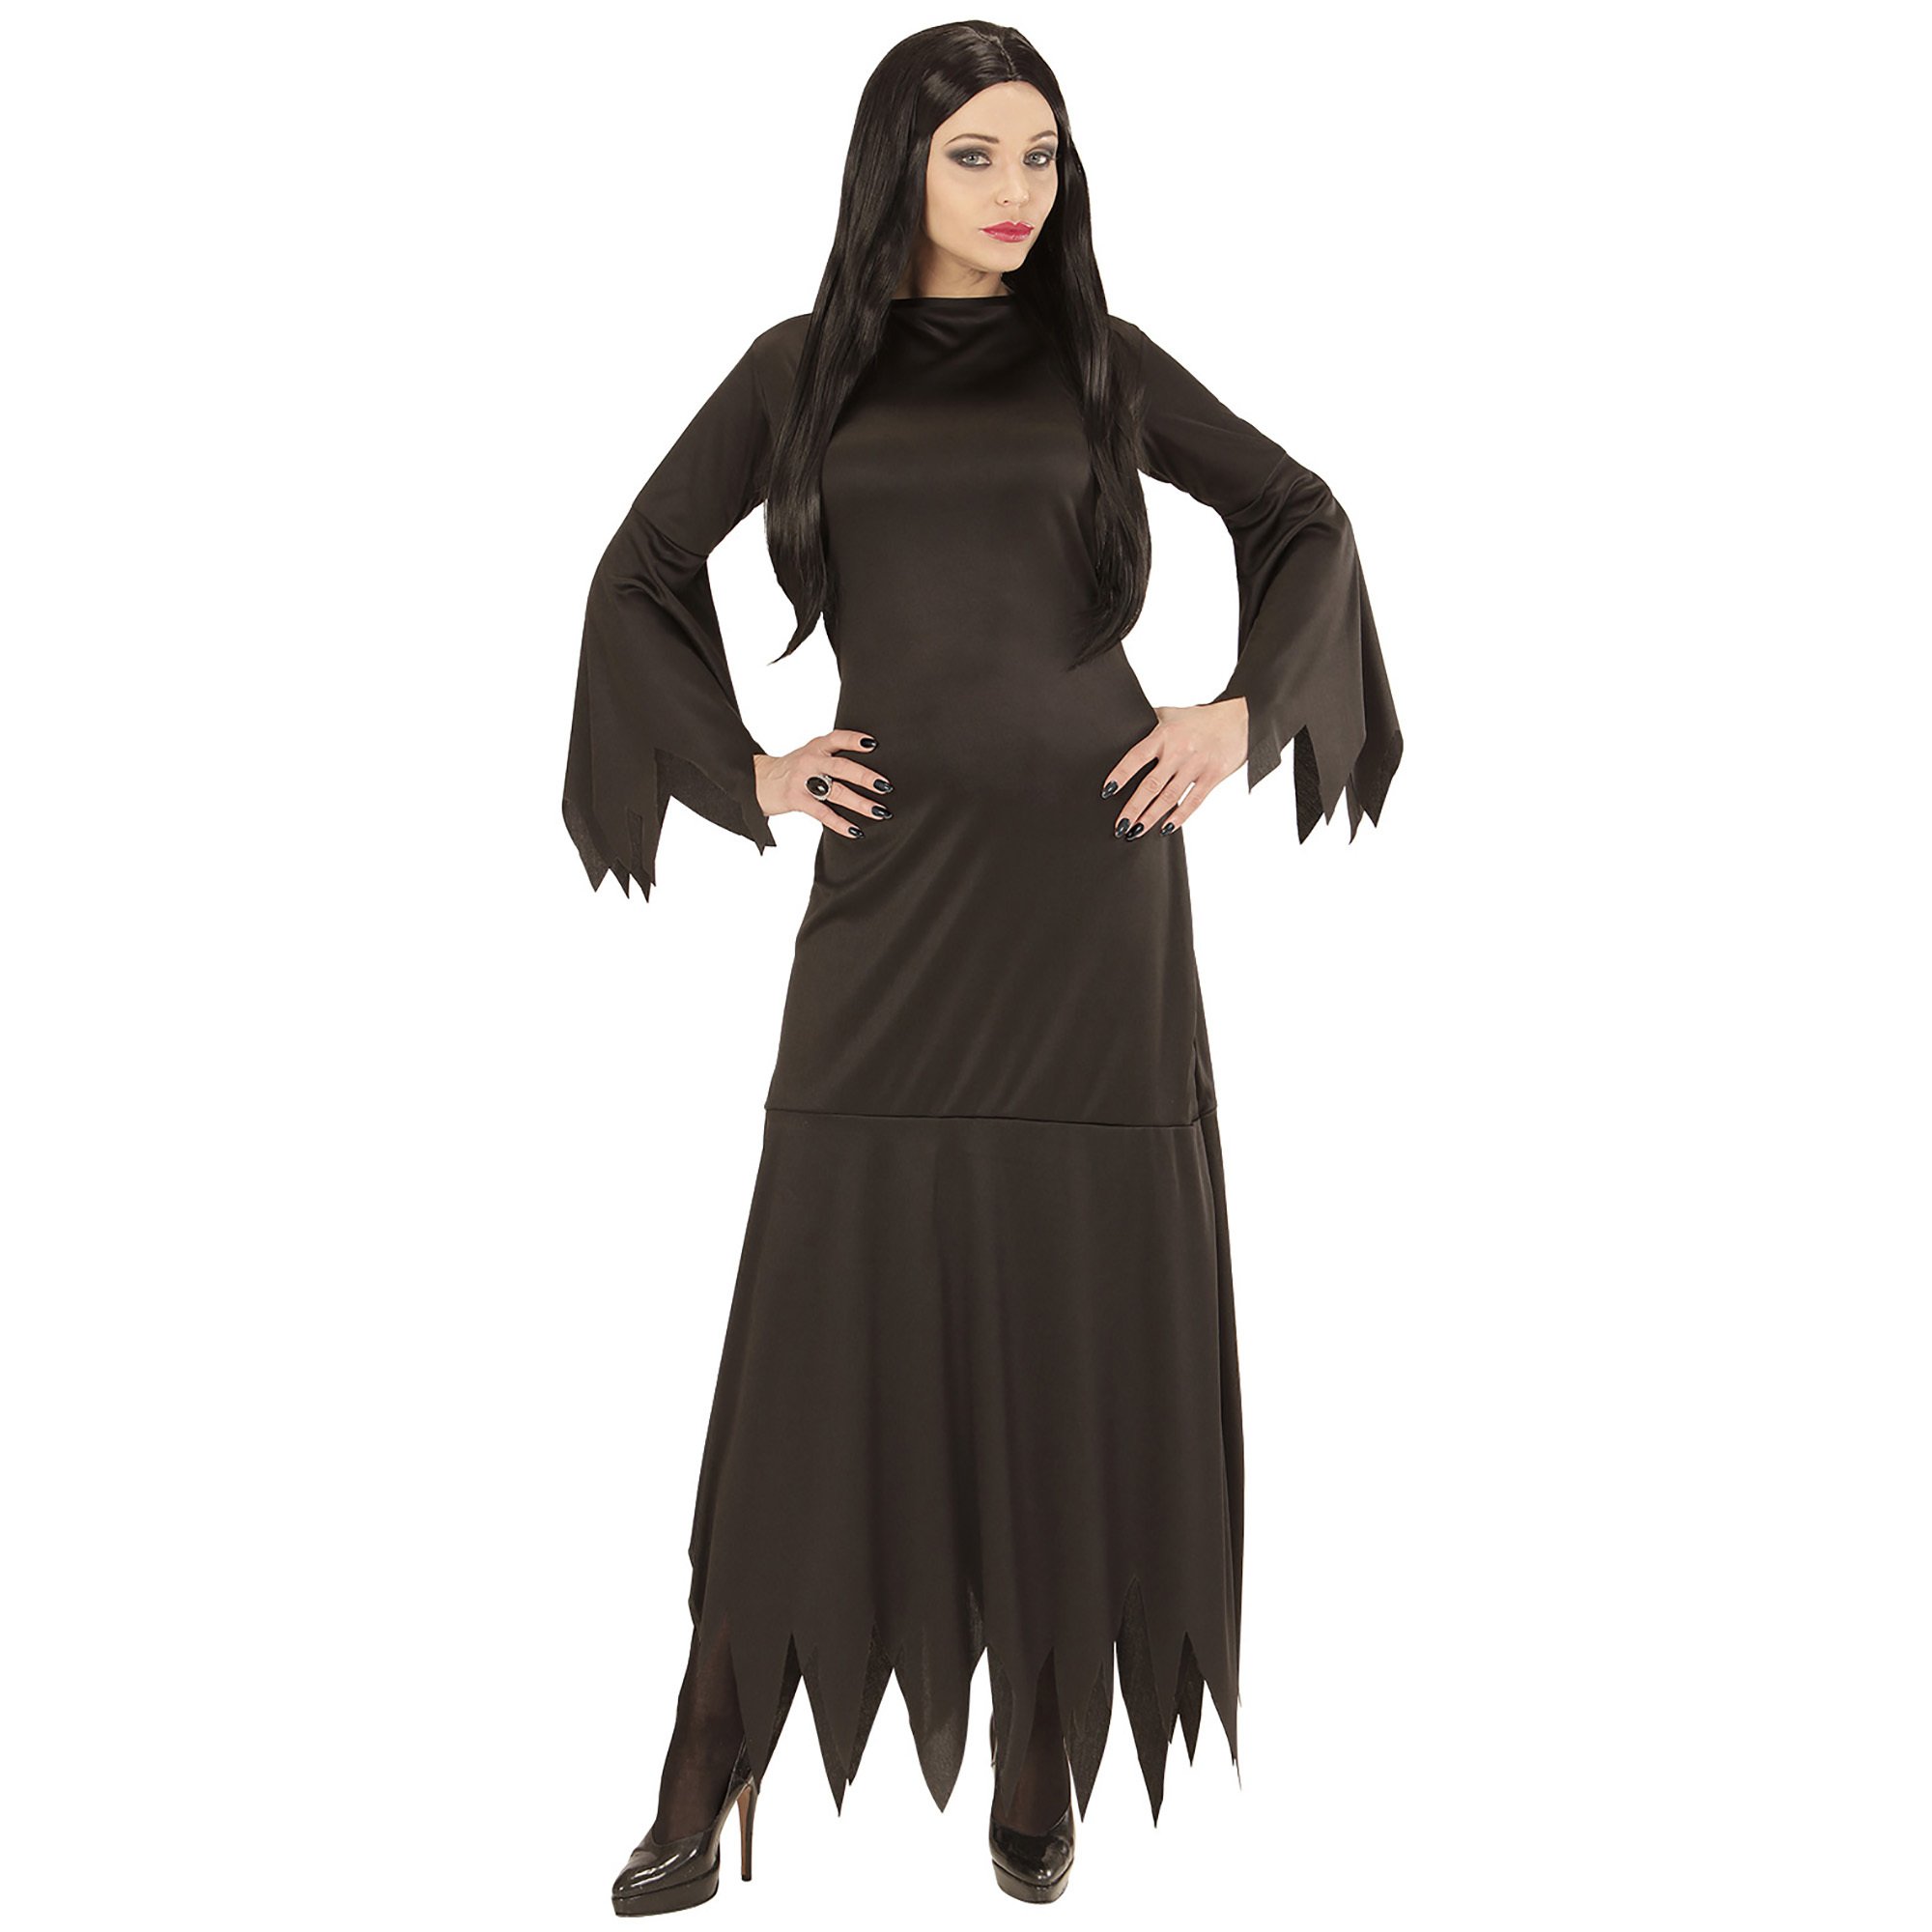 Heksen jurk zwart Mortisia dame 